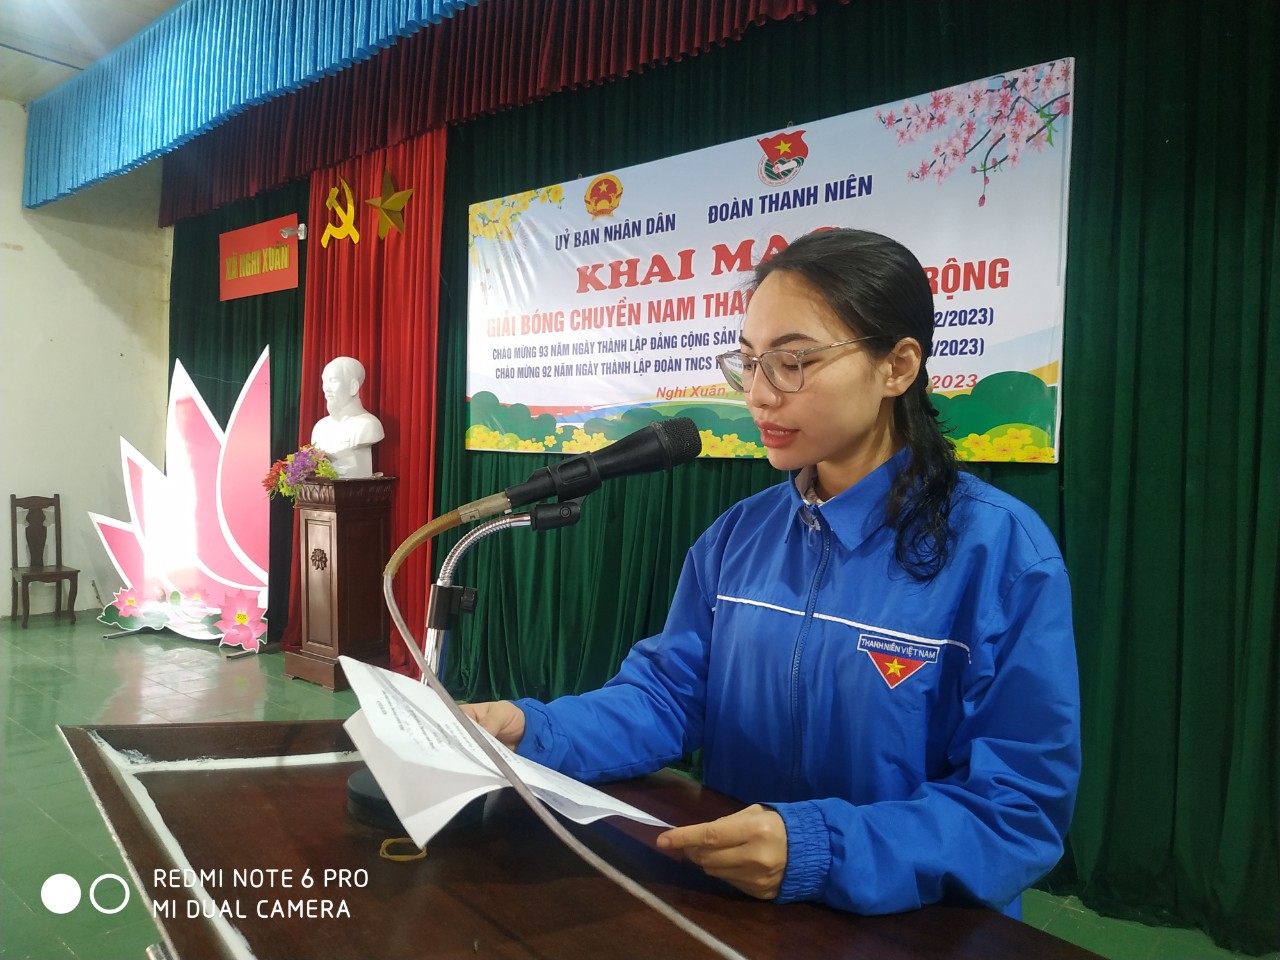 đồng chí Phạm Thị Phương thảo, phó bí thư đoàn xã điều hành lễ khai mạc giải bóng chuyền nam 2023